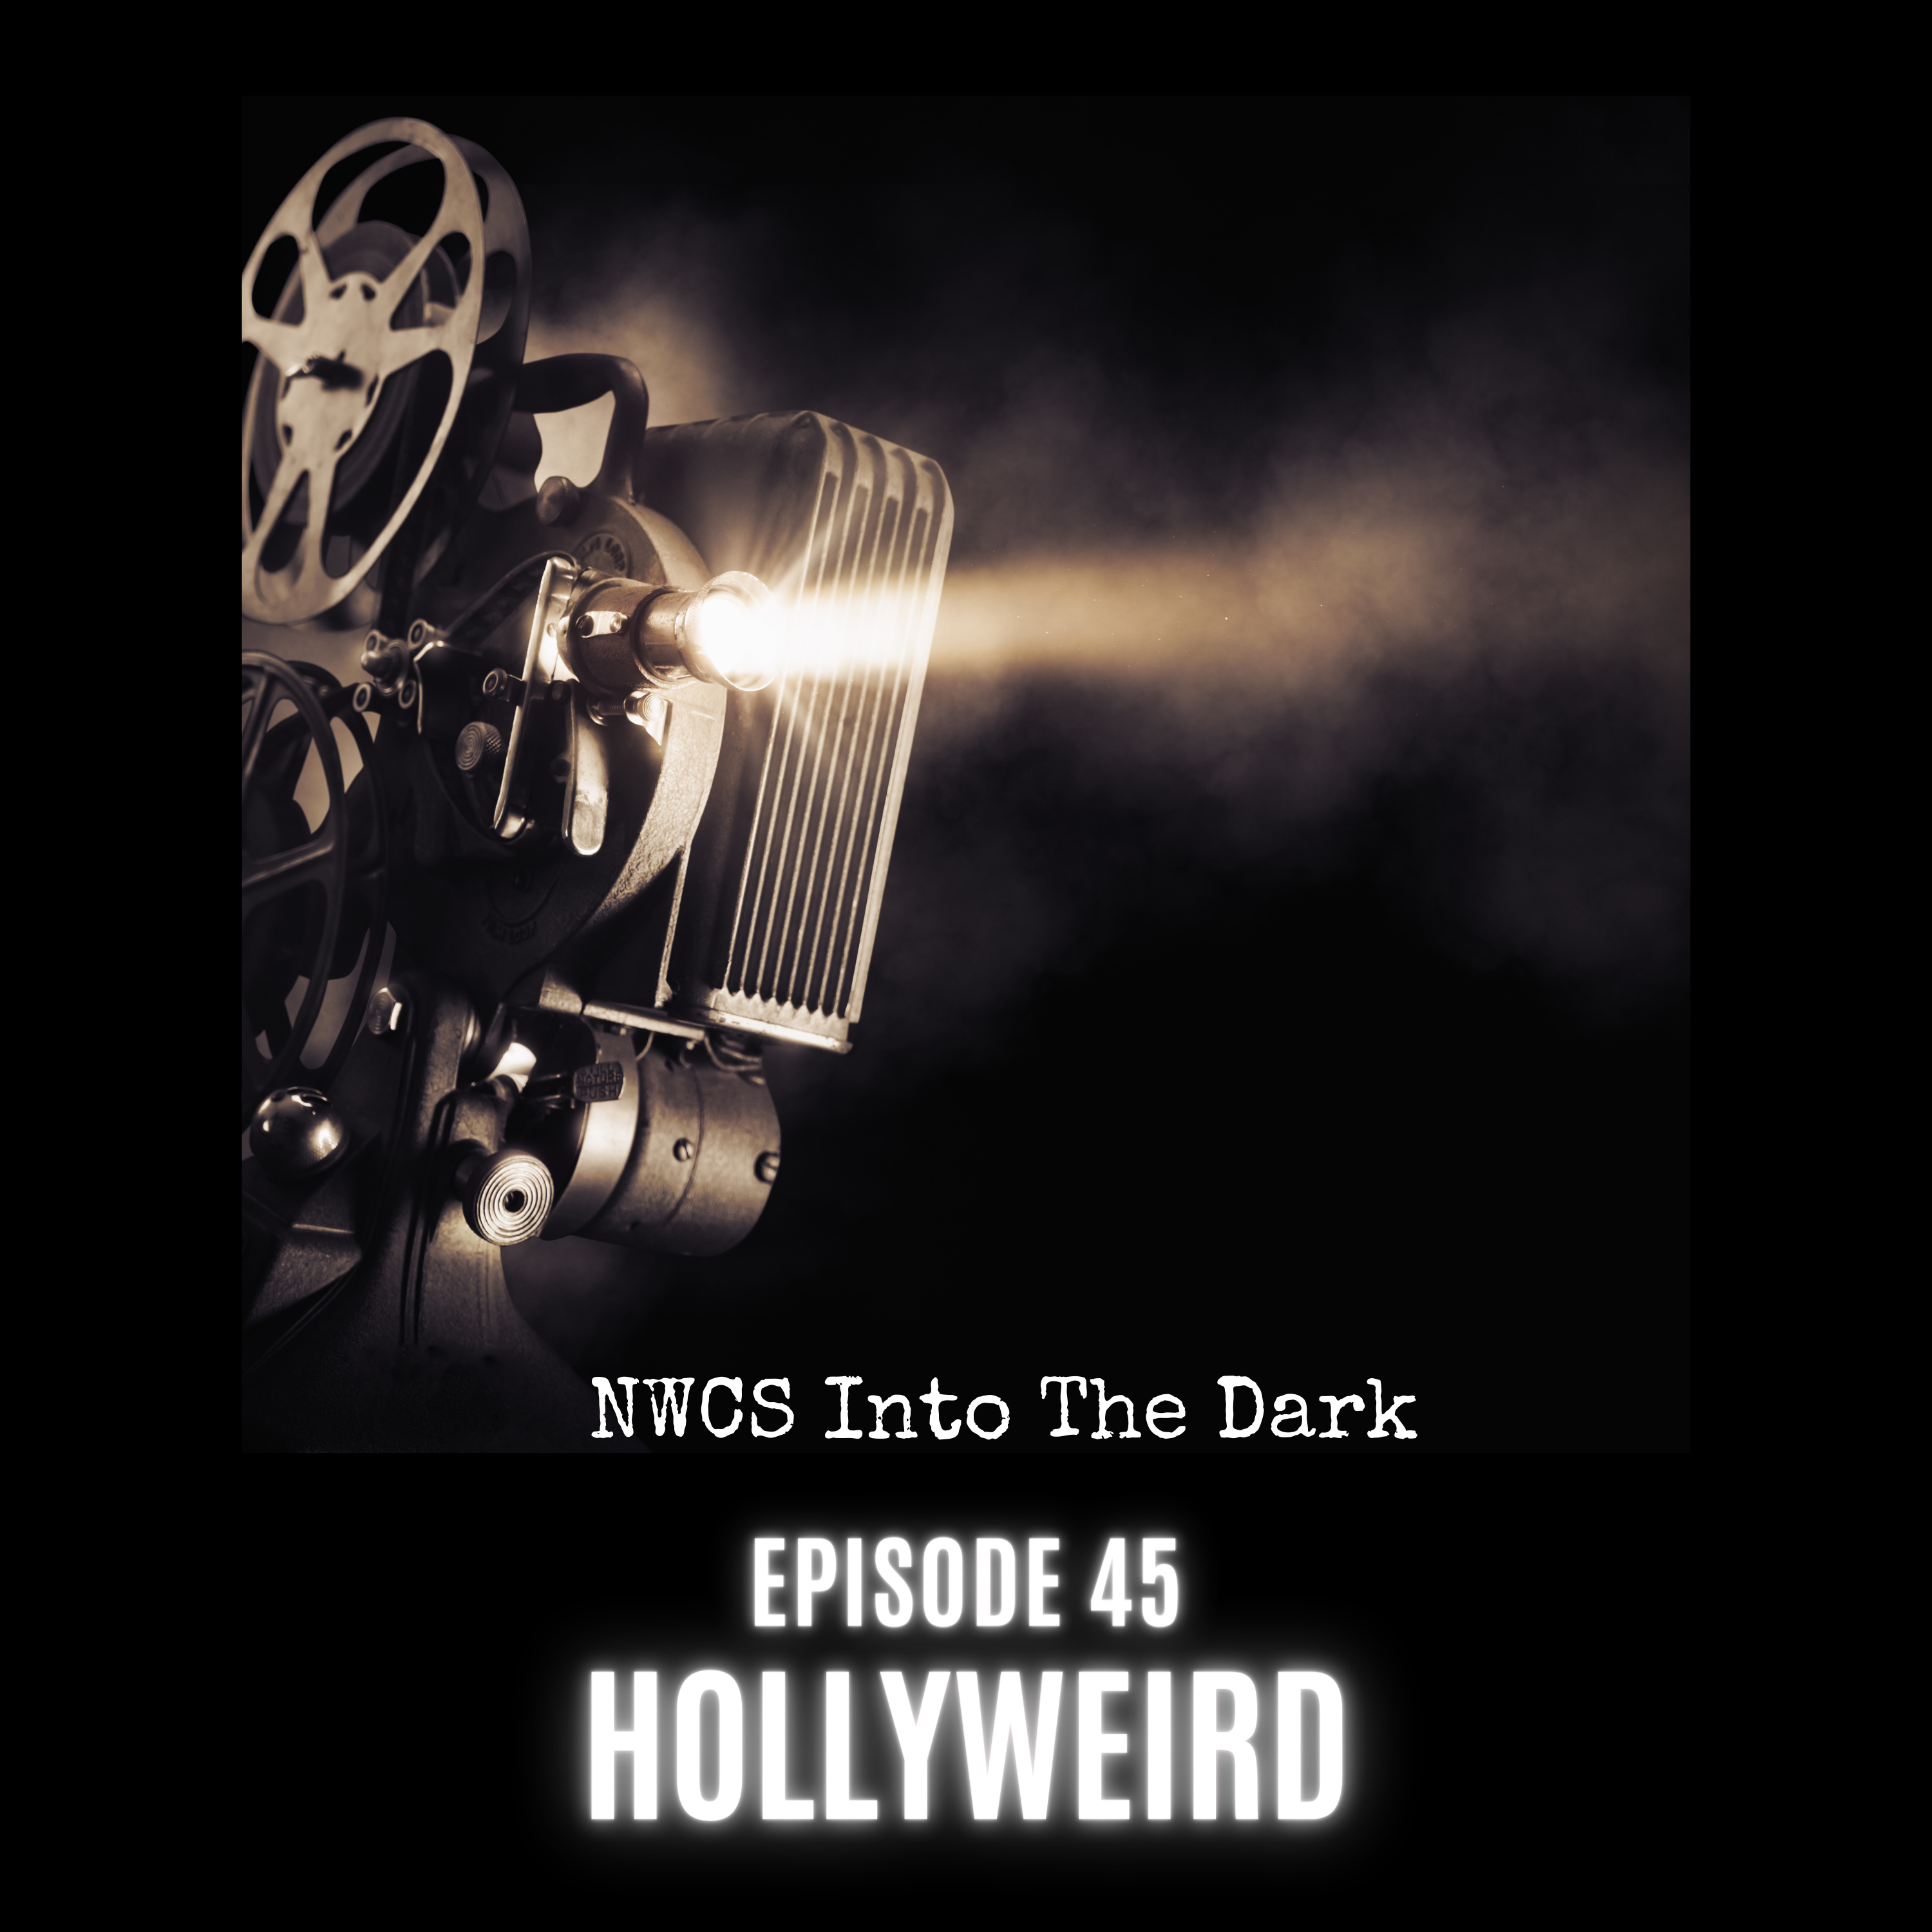 NWCS Into The Dark Episode 45 Hollyweird